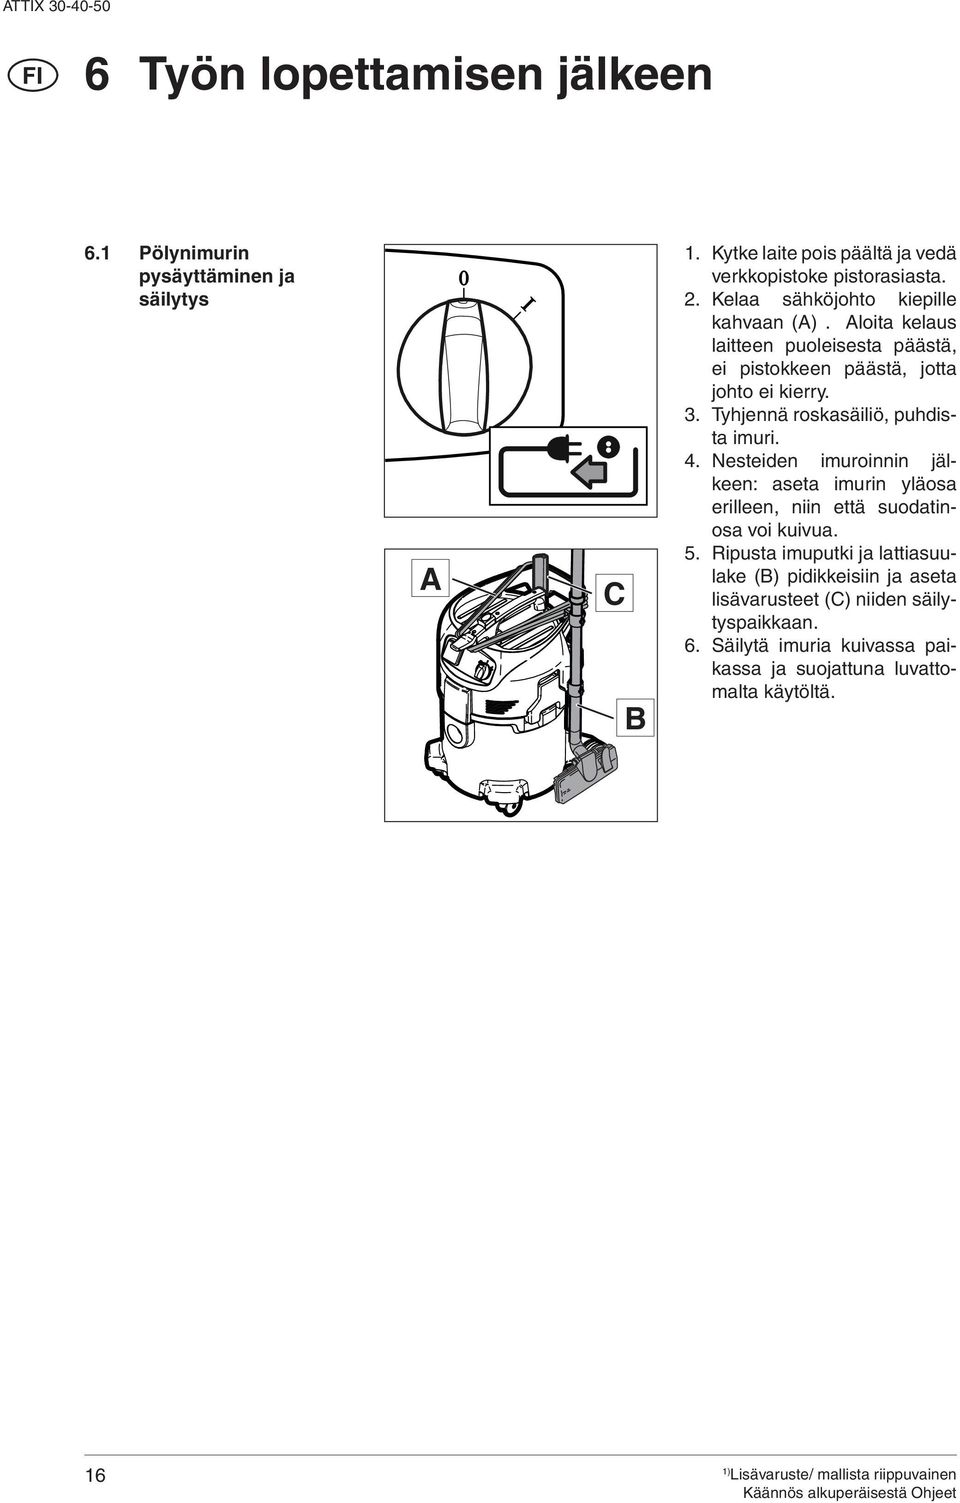 loita kelaus laitteen puoleisesta päästä, ei pistokkeen päästä, jotta johto ei kierry. 3. Tyhjennä roskasäiliö, puhdista imuri. 4.